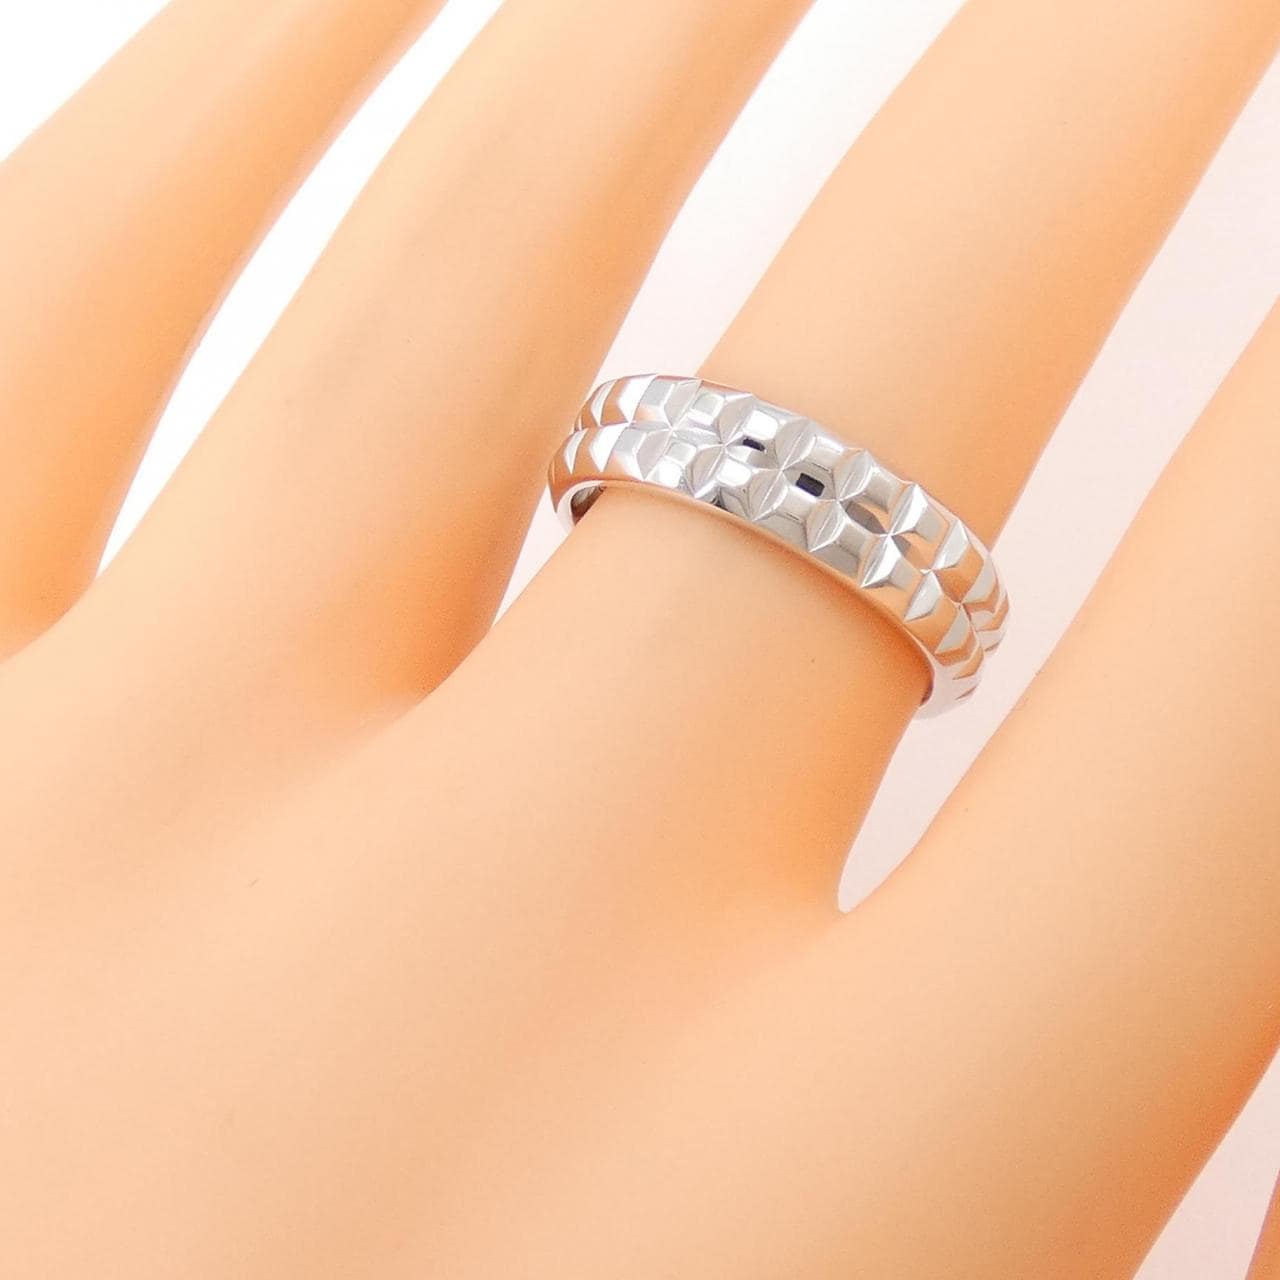 Boucheron鑽石尖角戒指